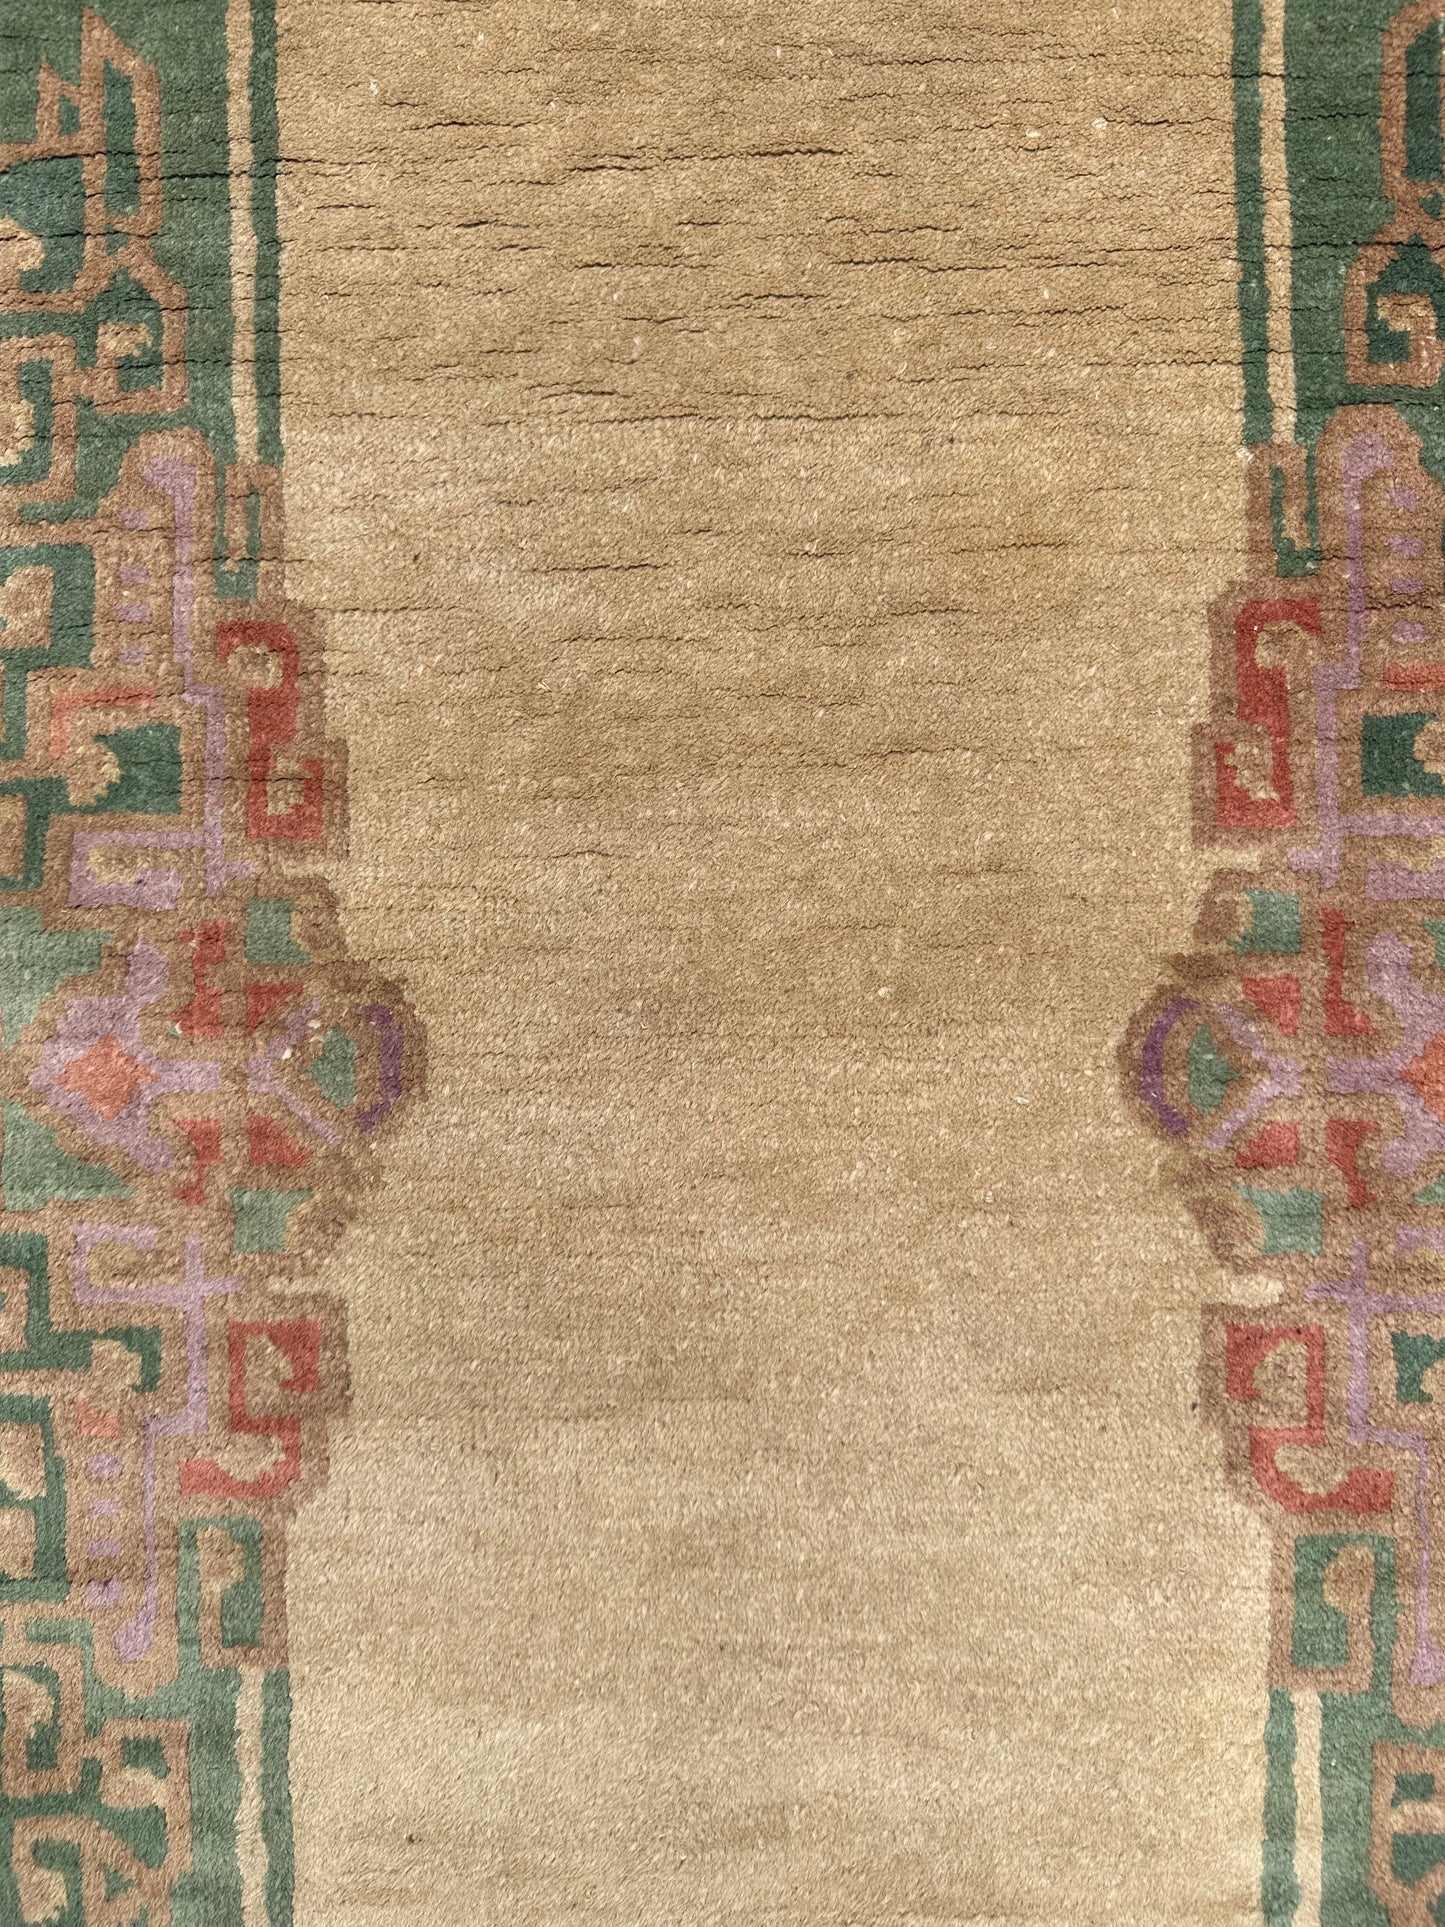 2'x4' Green Beige Tan Vintage Wool Chinese Art Deco Rug